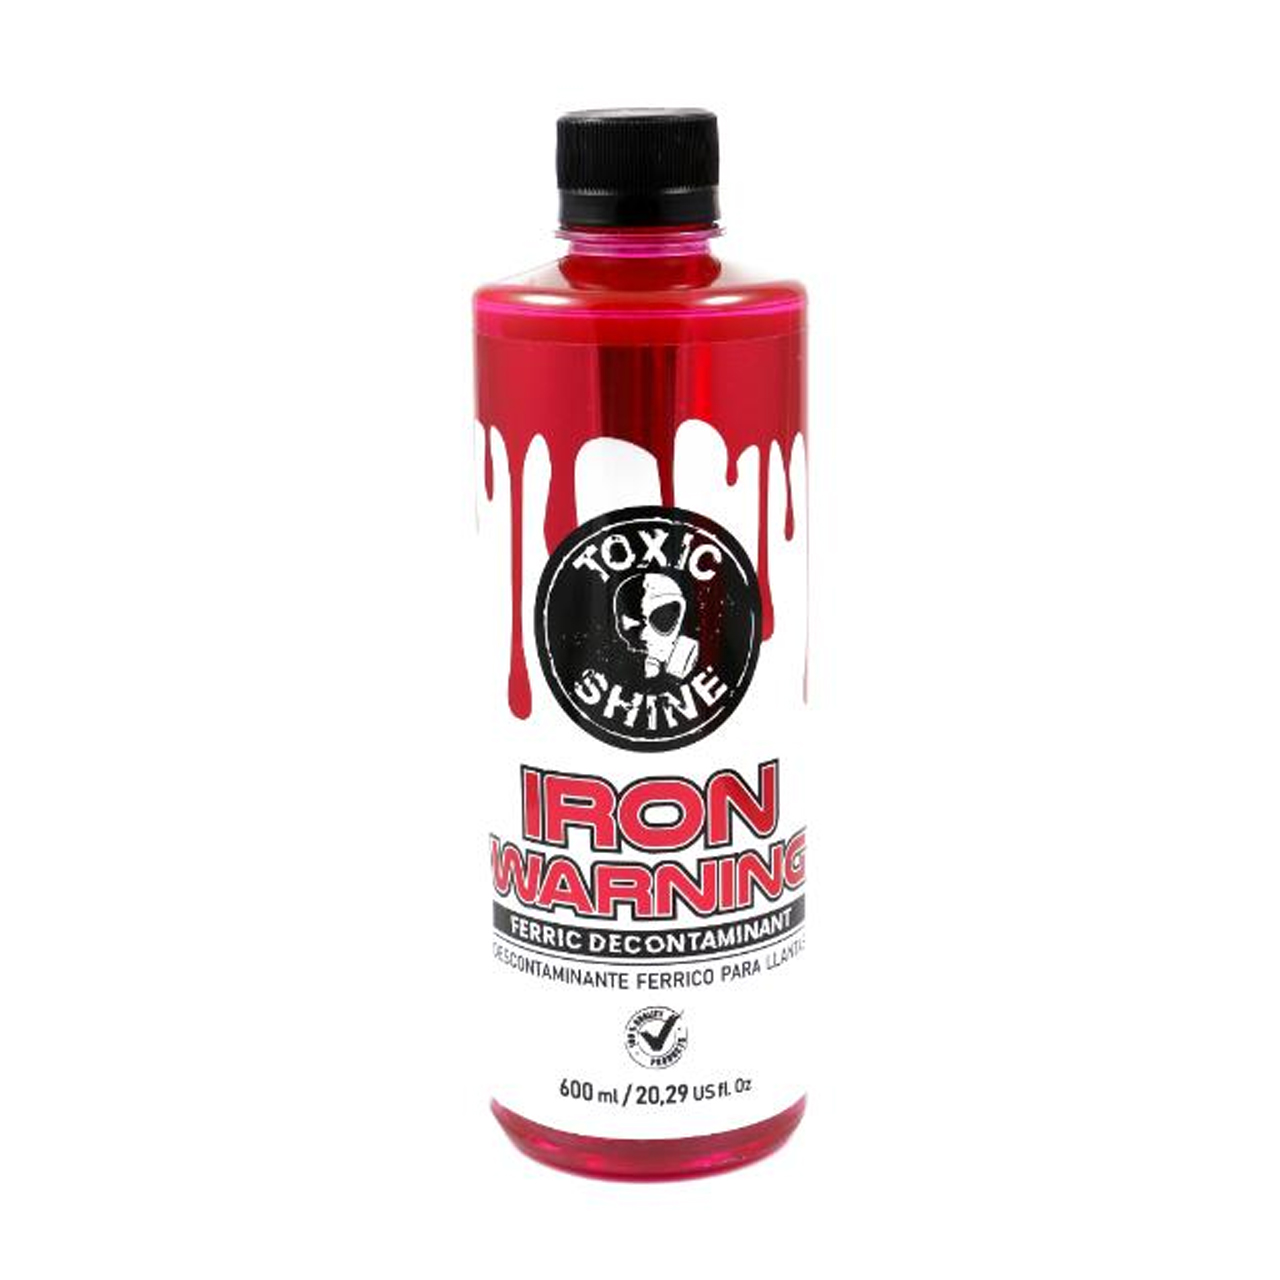 Iron Warning - Comprar en Toxic Shine